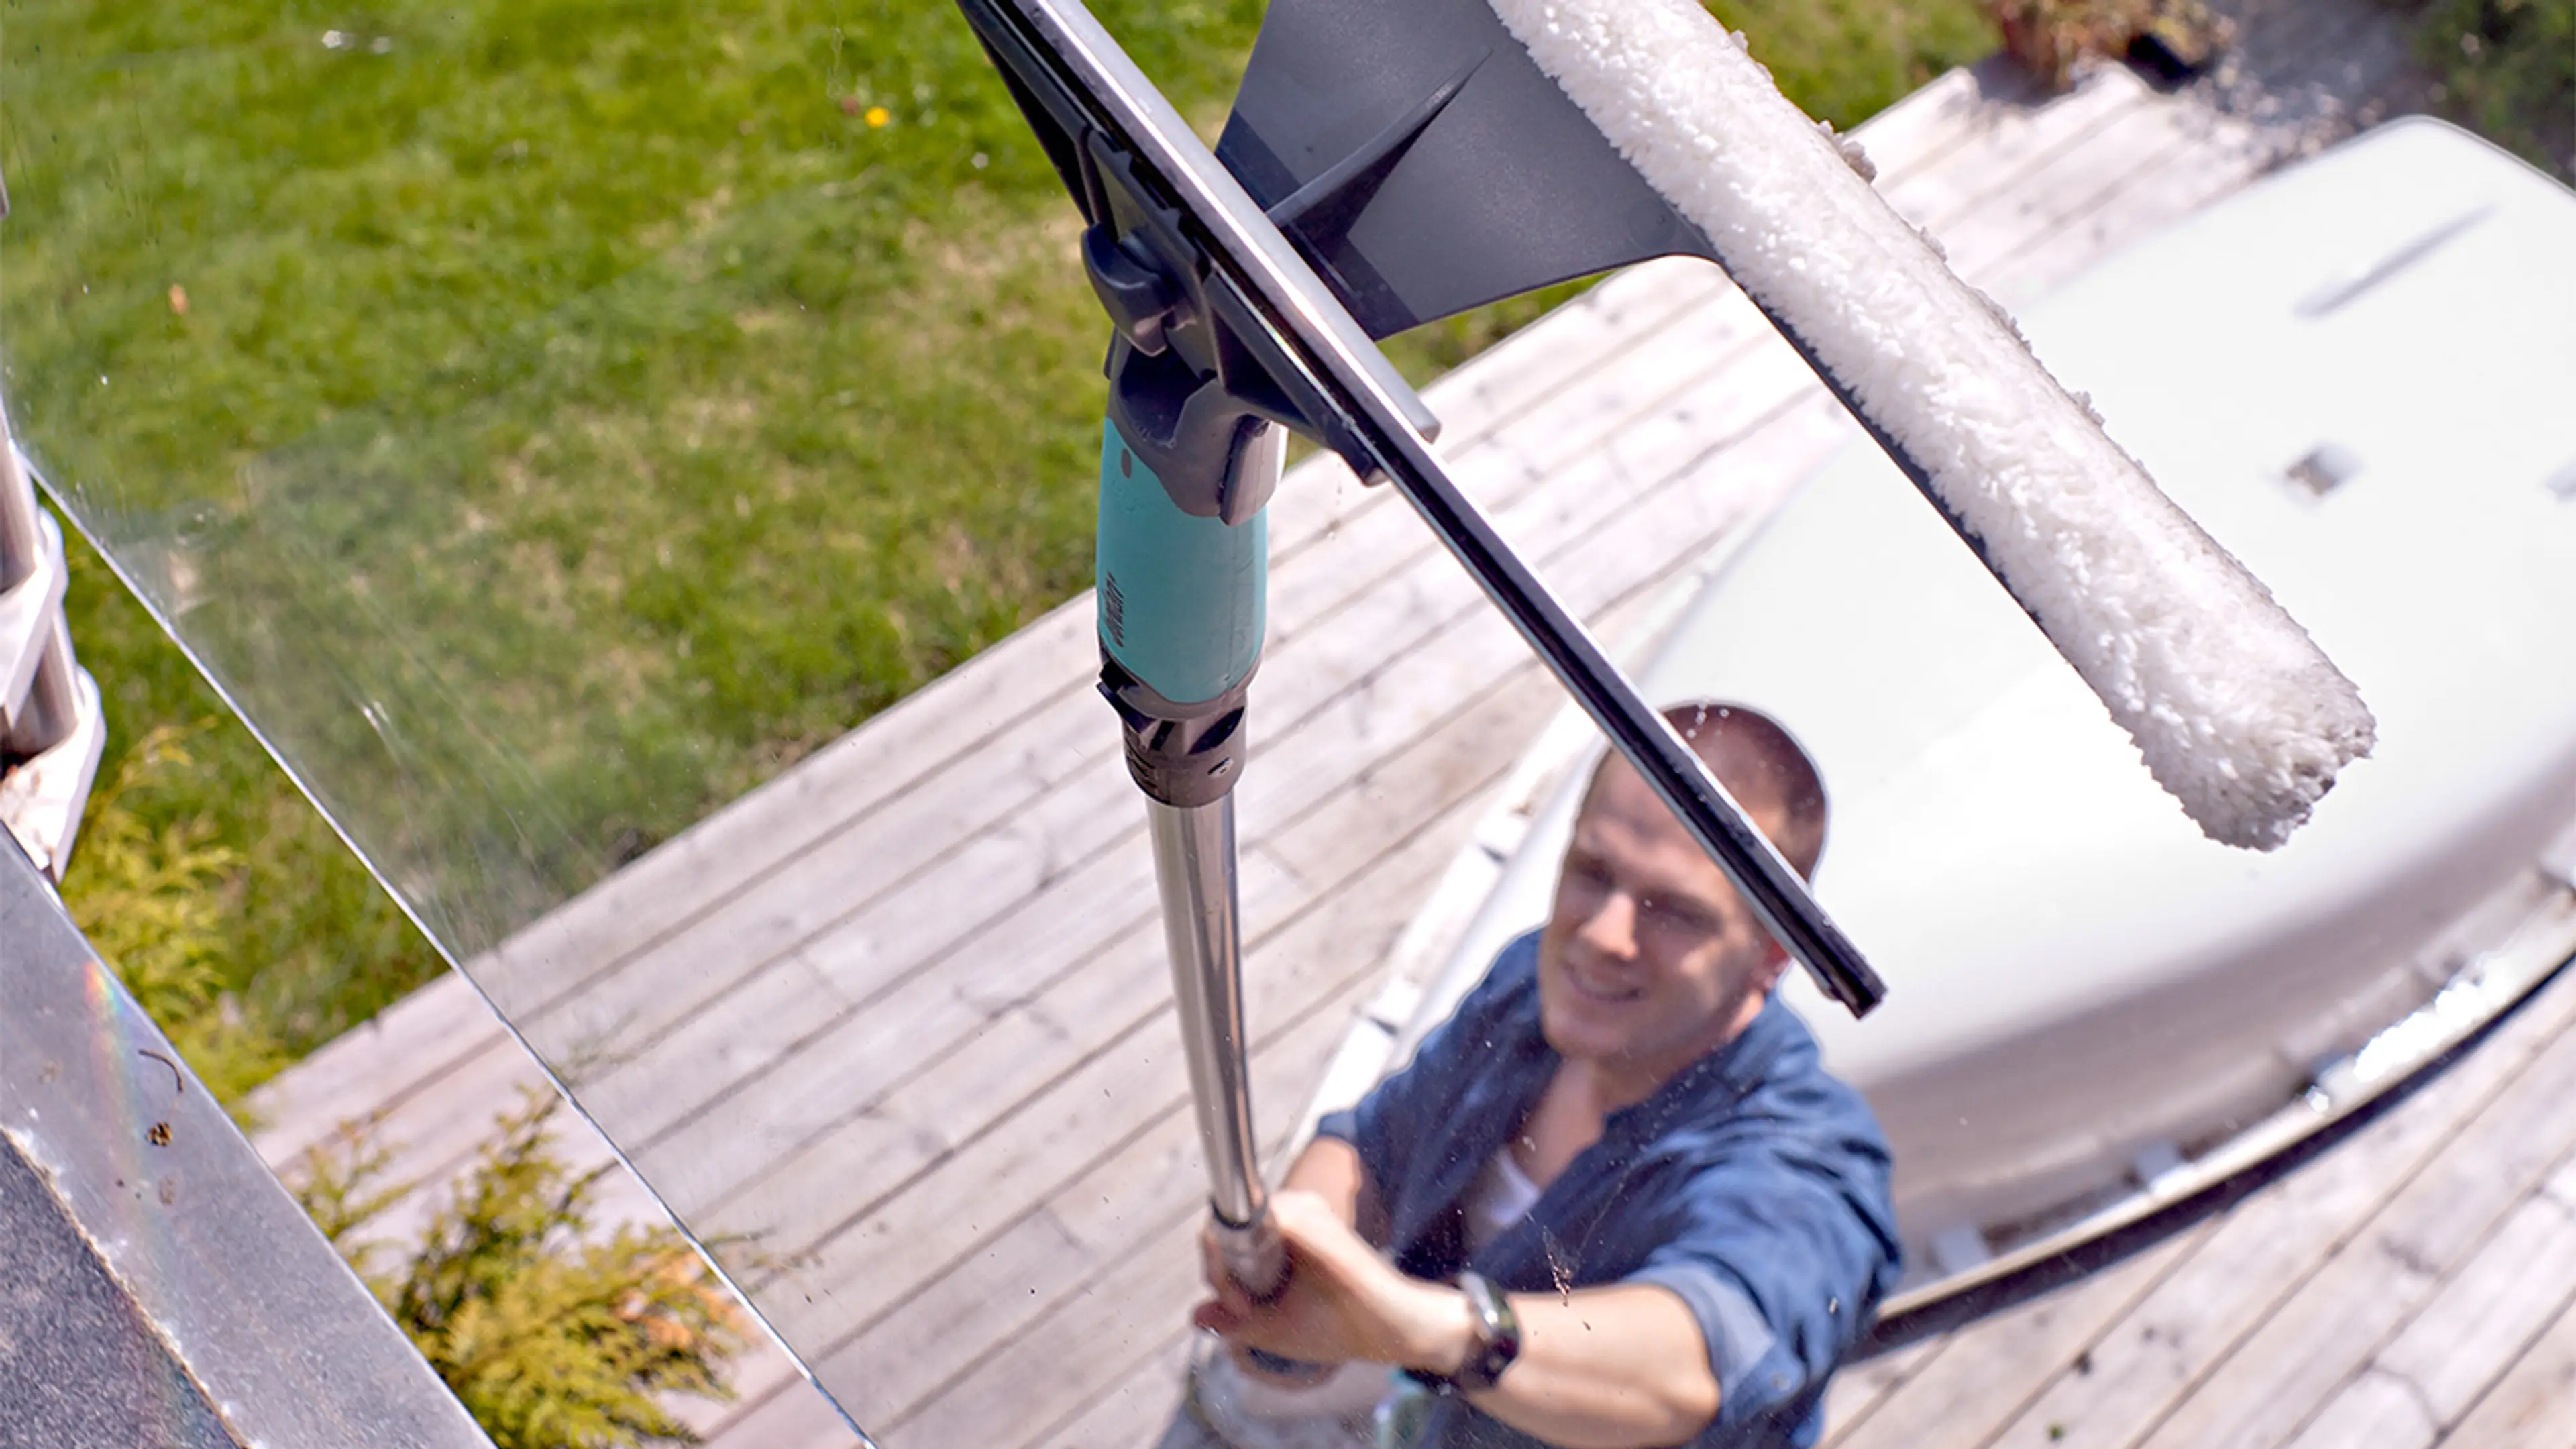 Mann som vasker vindu ute med forlengerskaft til glassflater høyt oppe.